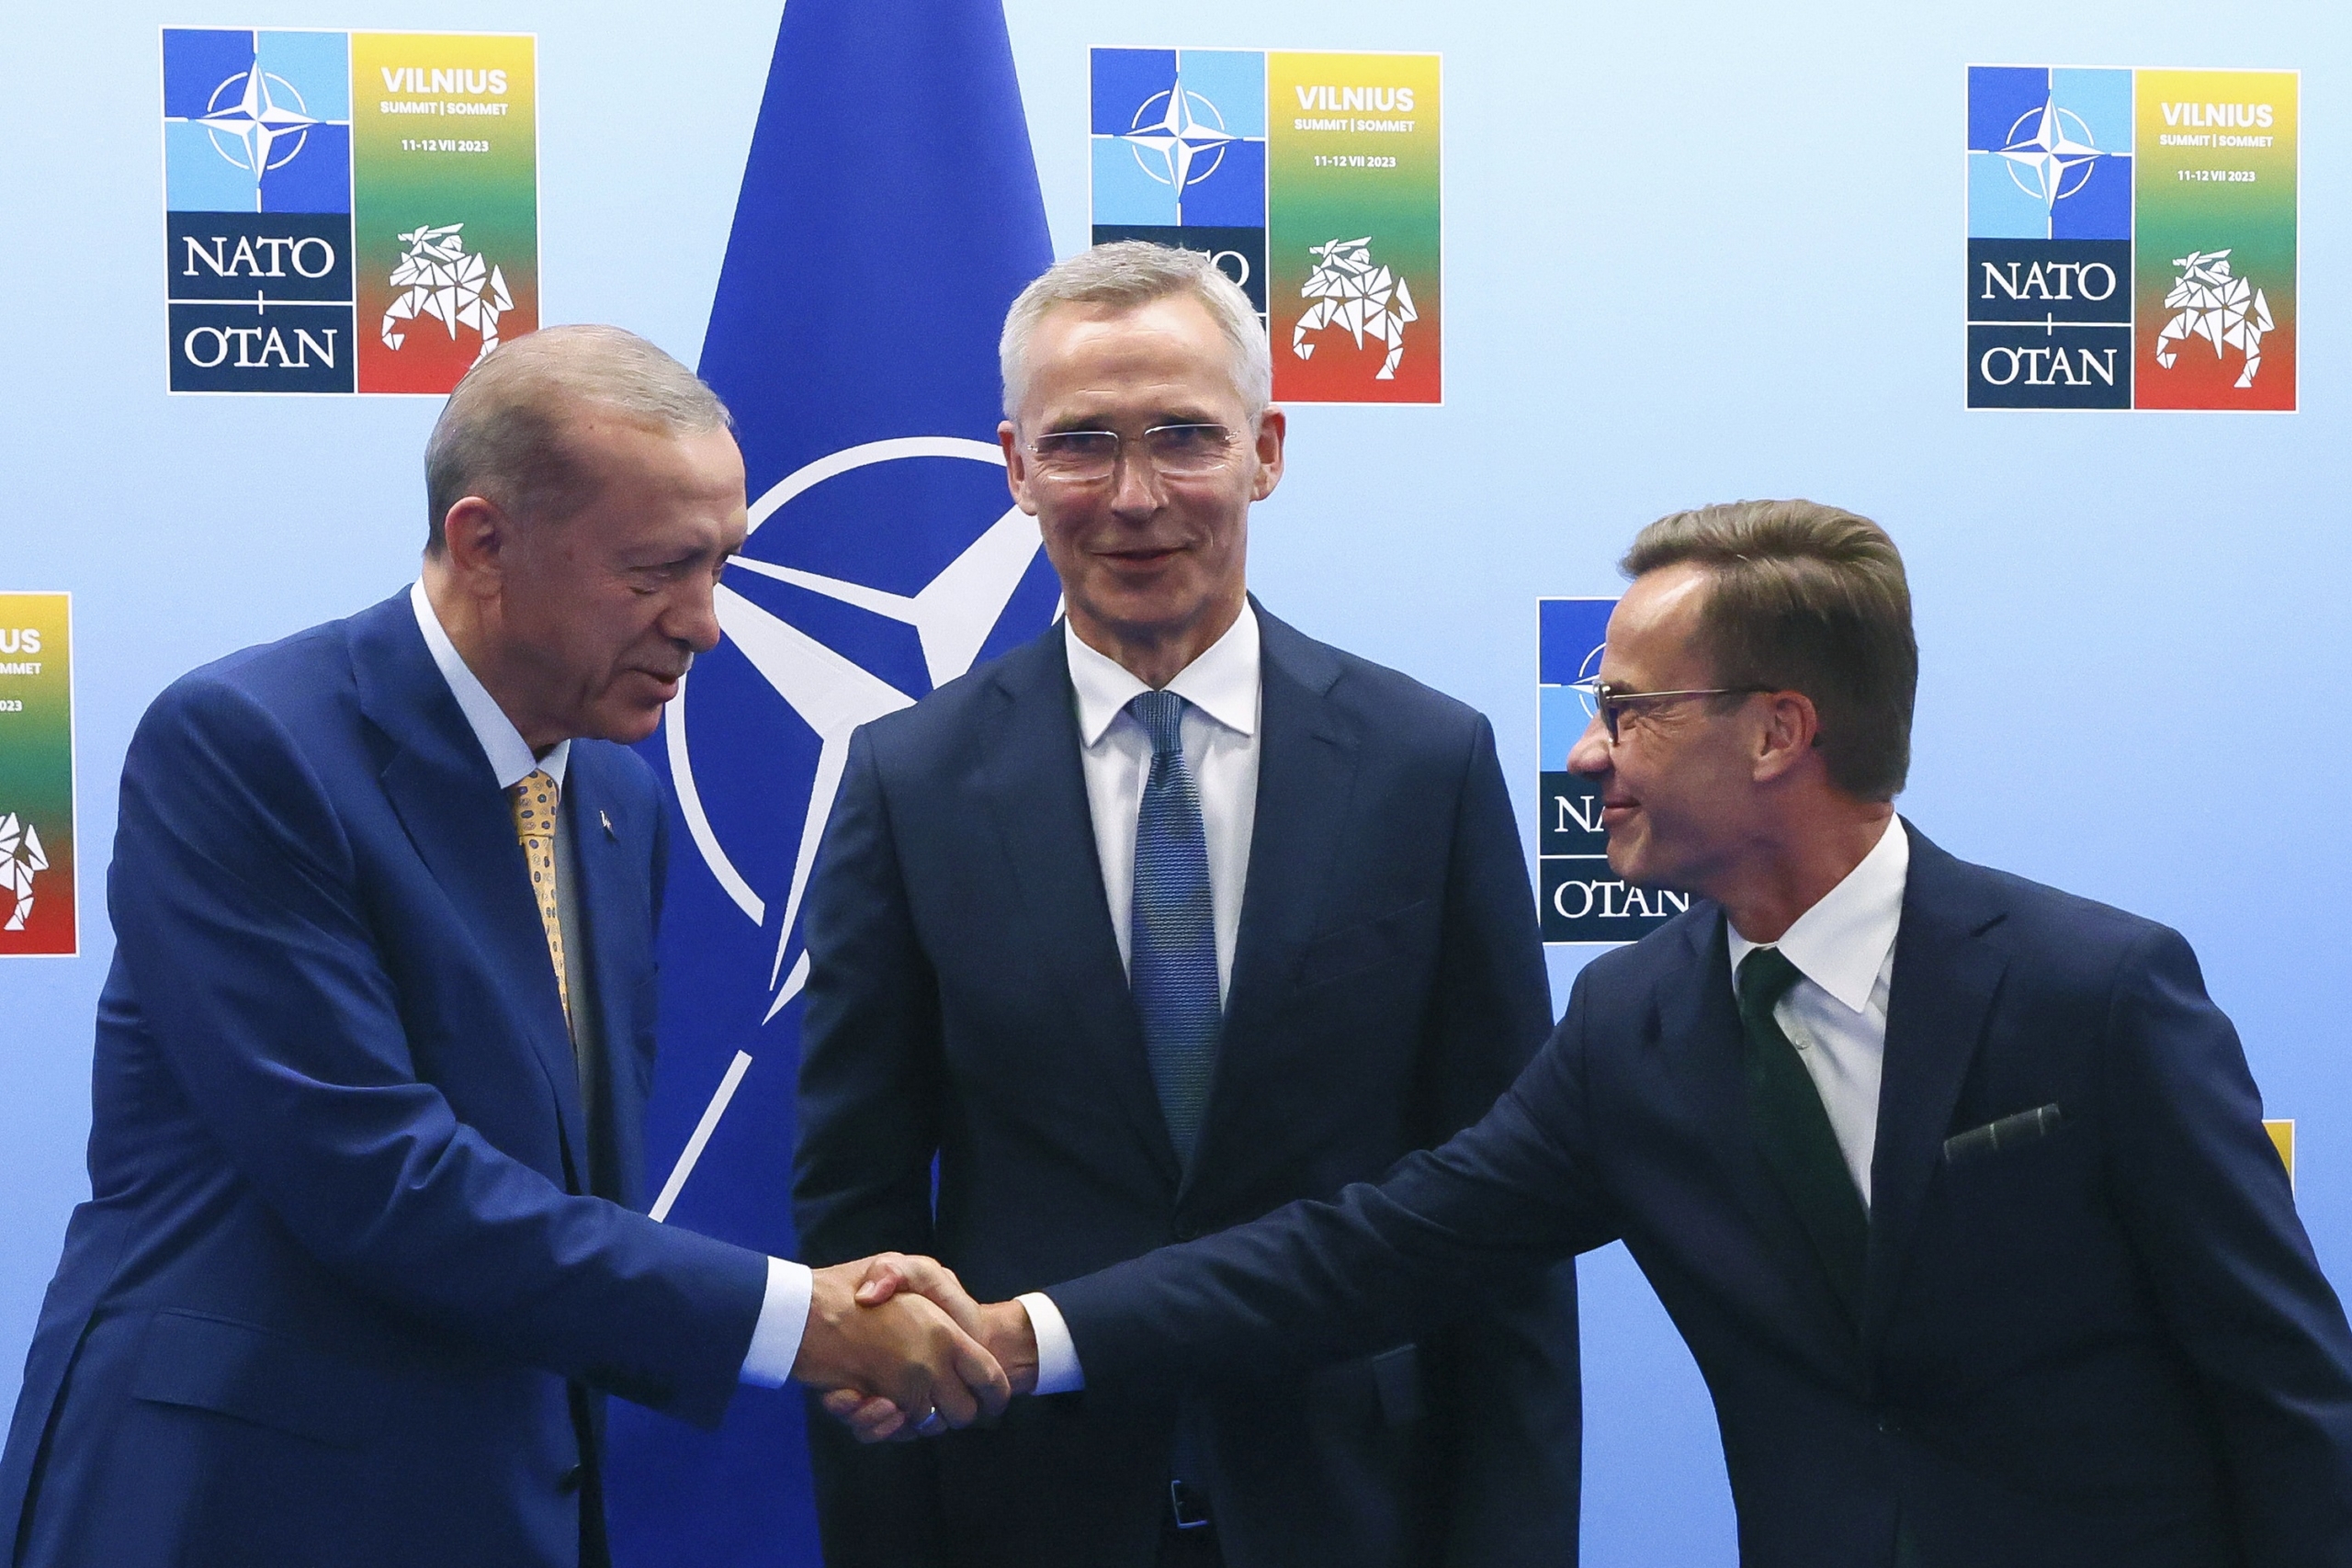 Tổng thống Thổ Nhĩ Kỳ Recep Tayyip Erdogan (bên trái) bắt tay Thủ tướng Thụy Điển Ulf Kristersson (bên phải) trong khi Tổng thư ký NATO Jens Stoltenberg đang quan sát trước khi tham gia cuộc họp trước thềm hội nghị thượng đỉnh NATO ở Vilnius, Lithuania, hôm 10/07/2023. (Ảnh: Yves Herman, Pool Photo qua AP)